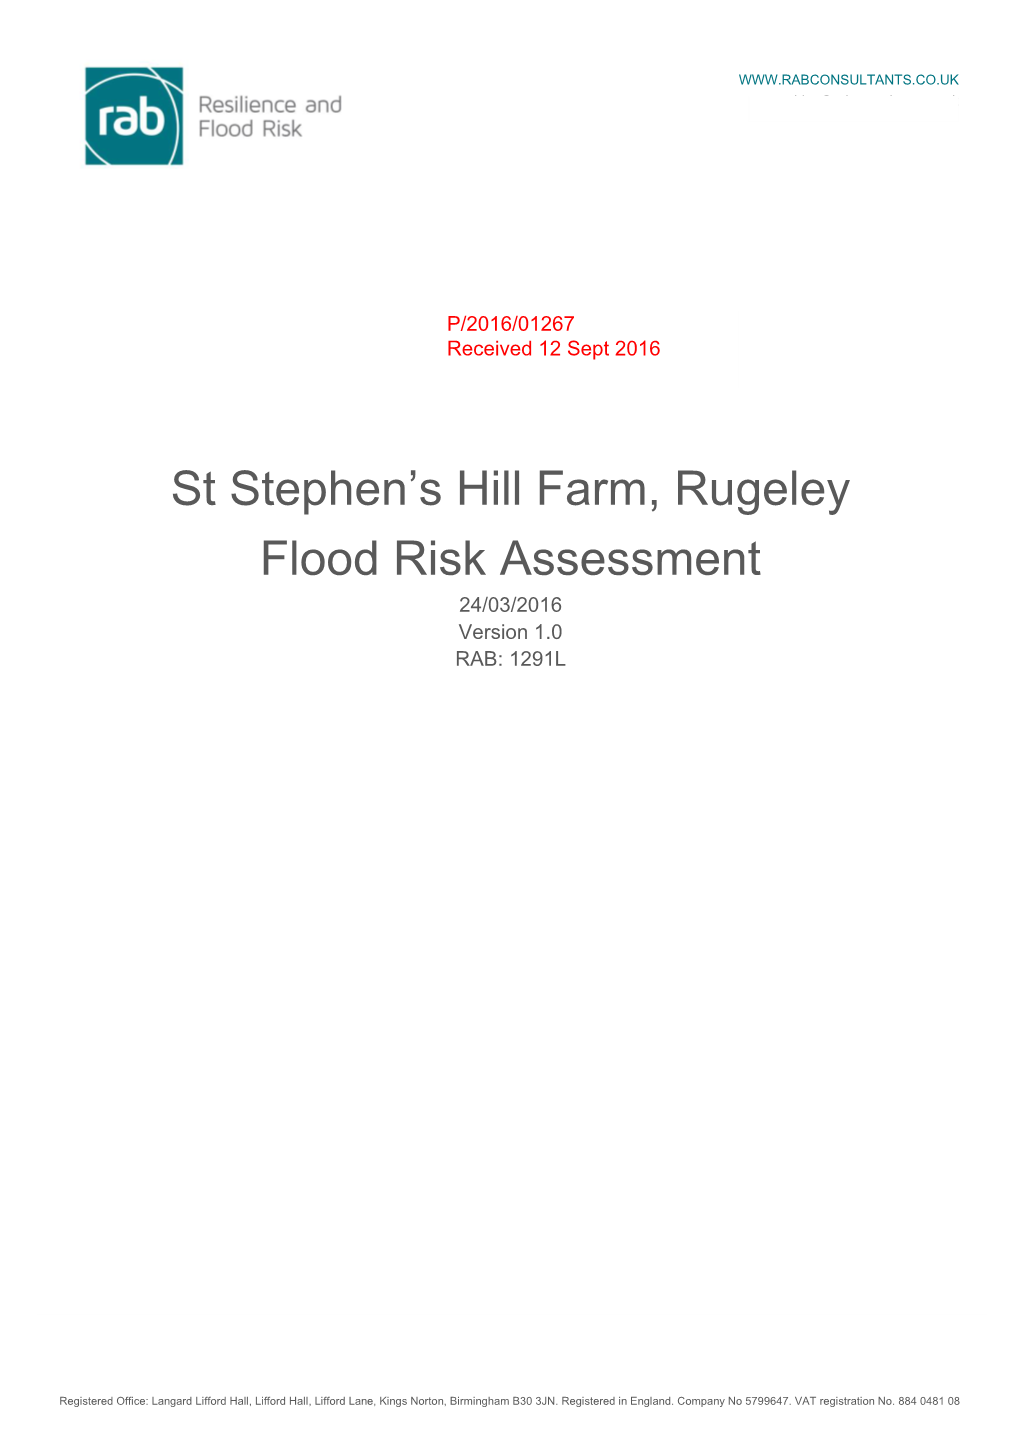 St Stephen's Hill Farm, Rugeley Flood Risk Assessment